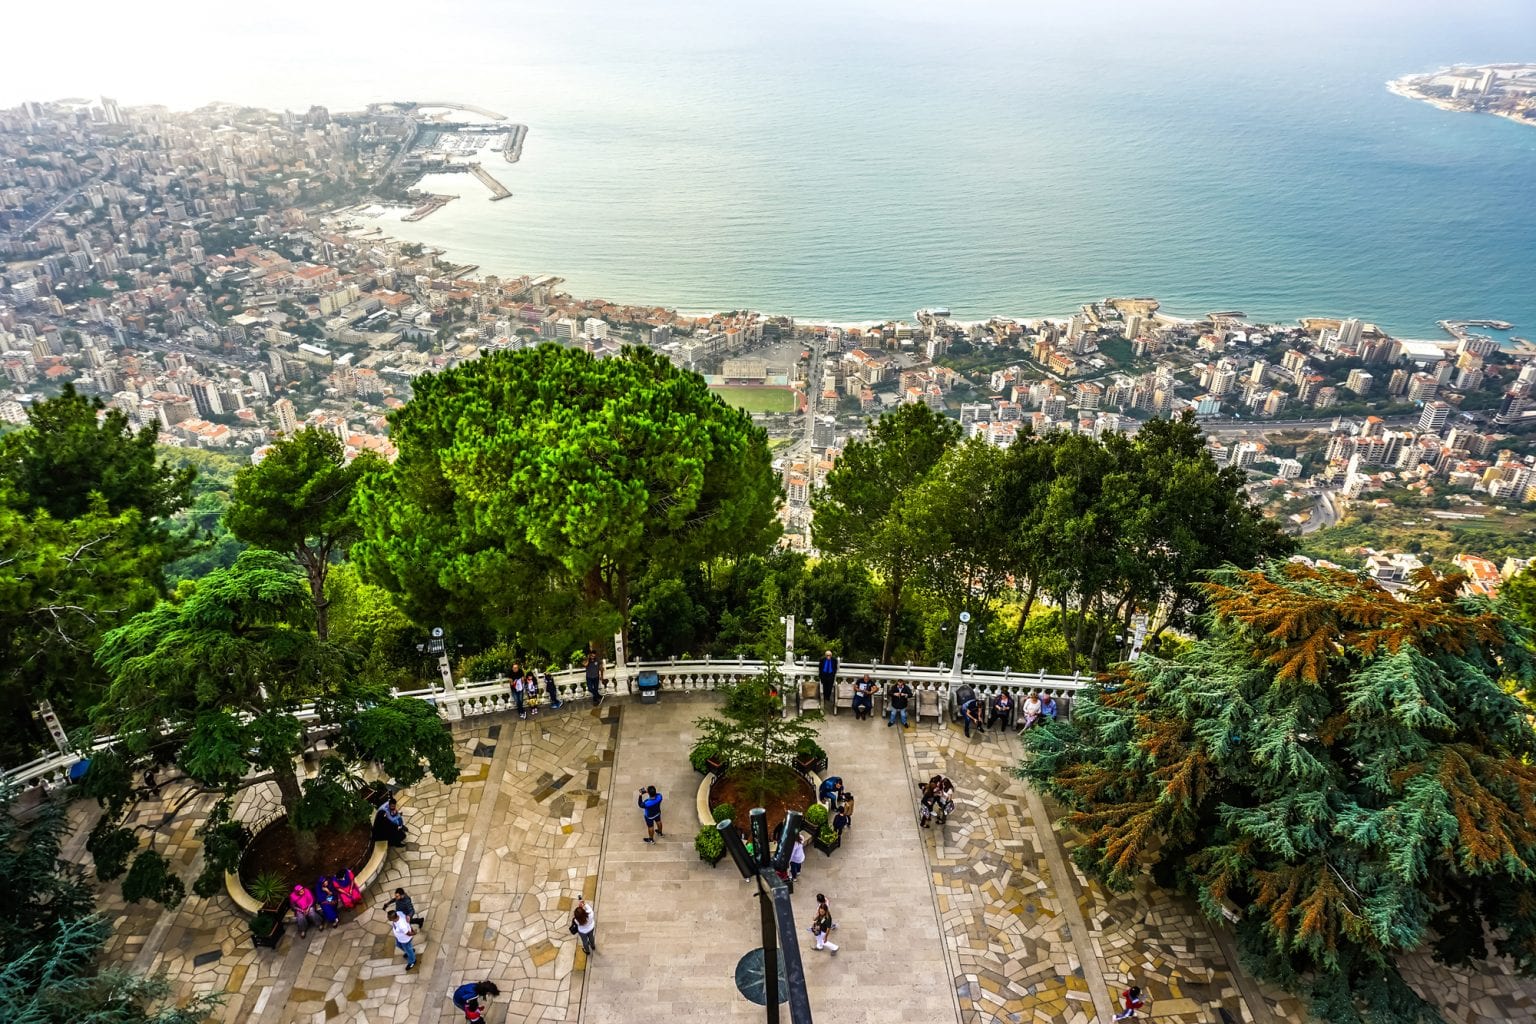 lebanon tourist activities